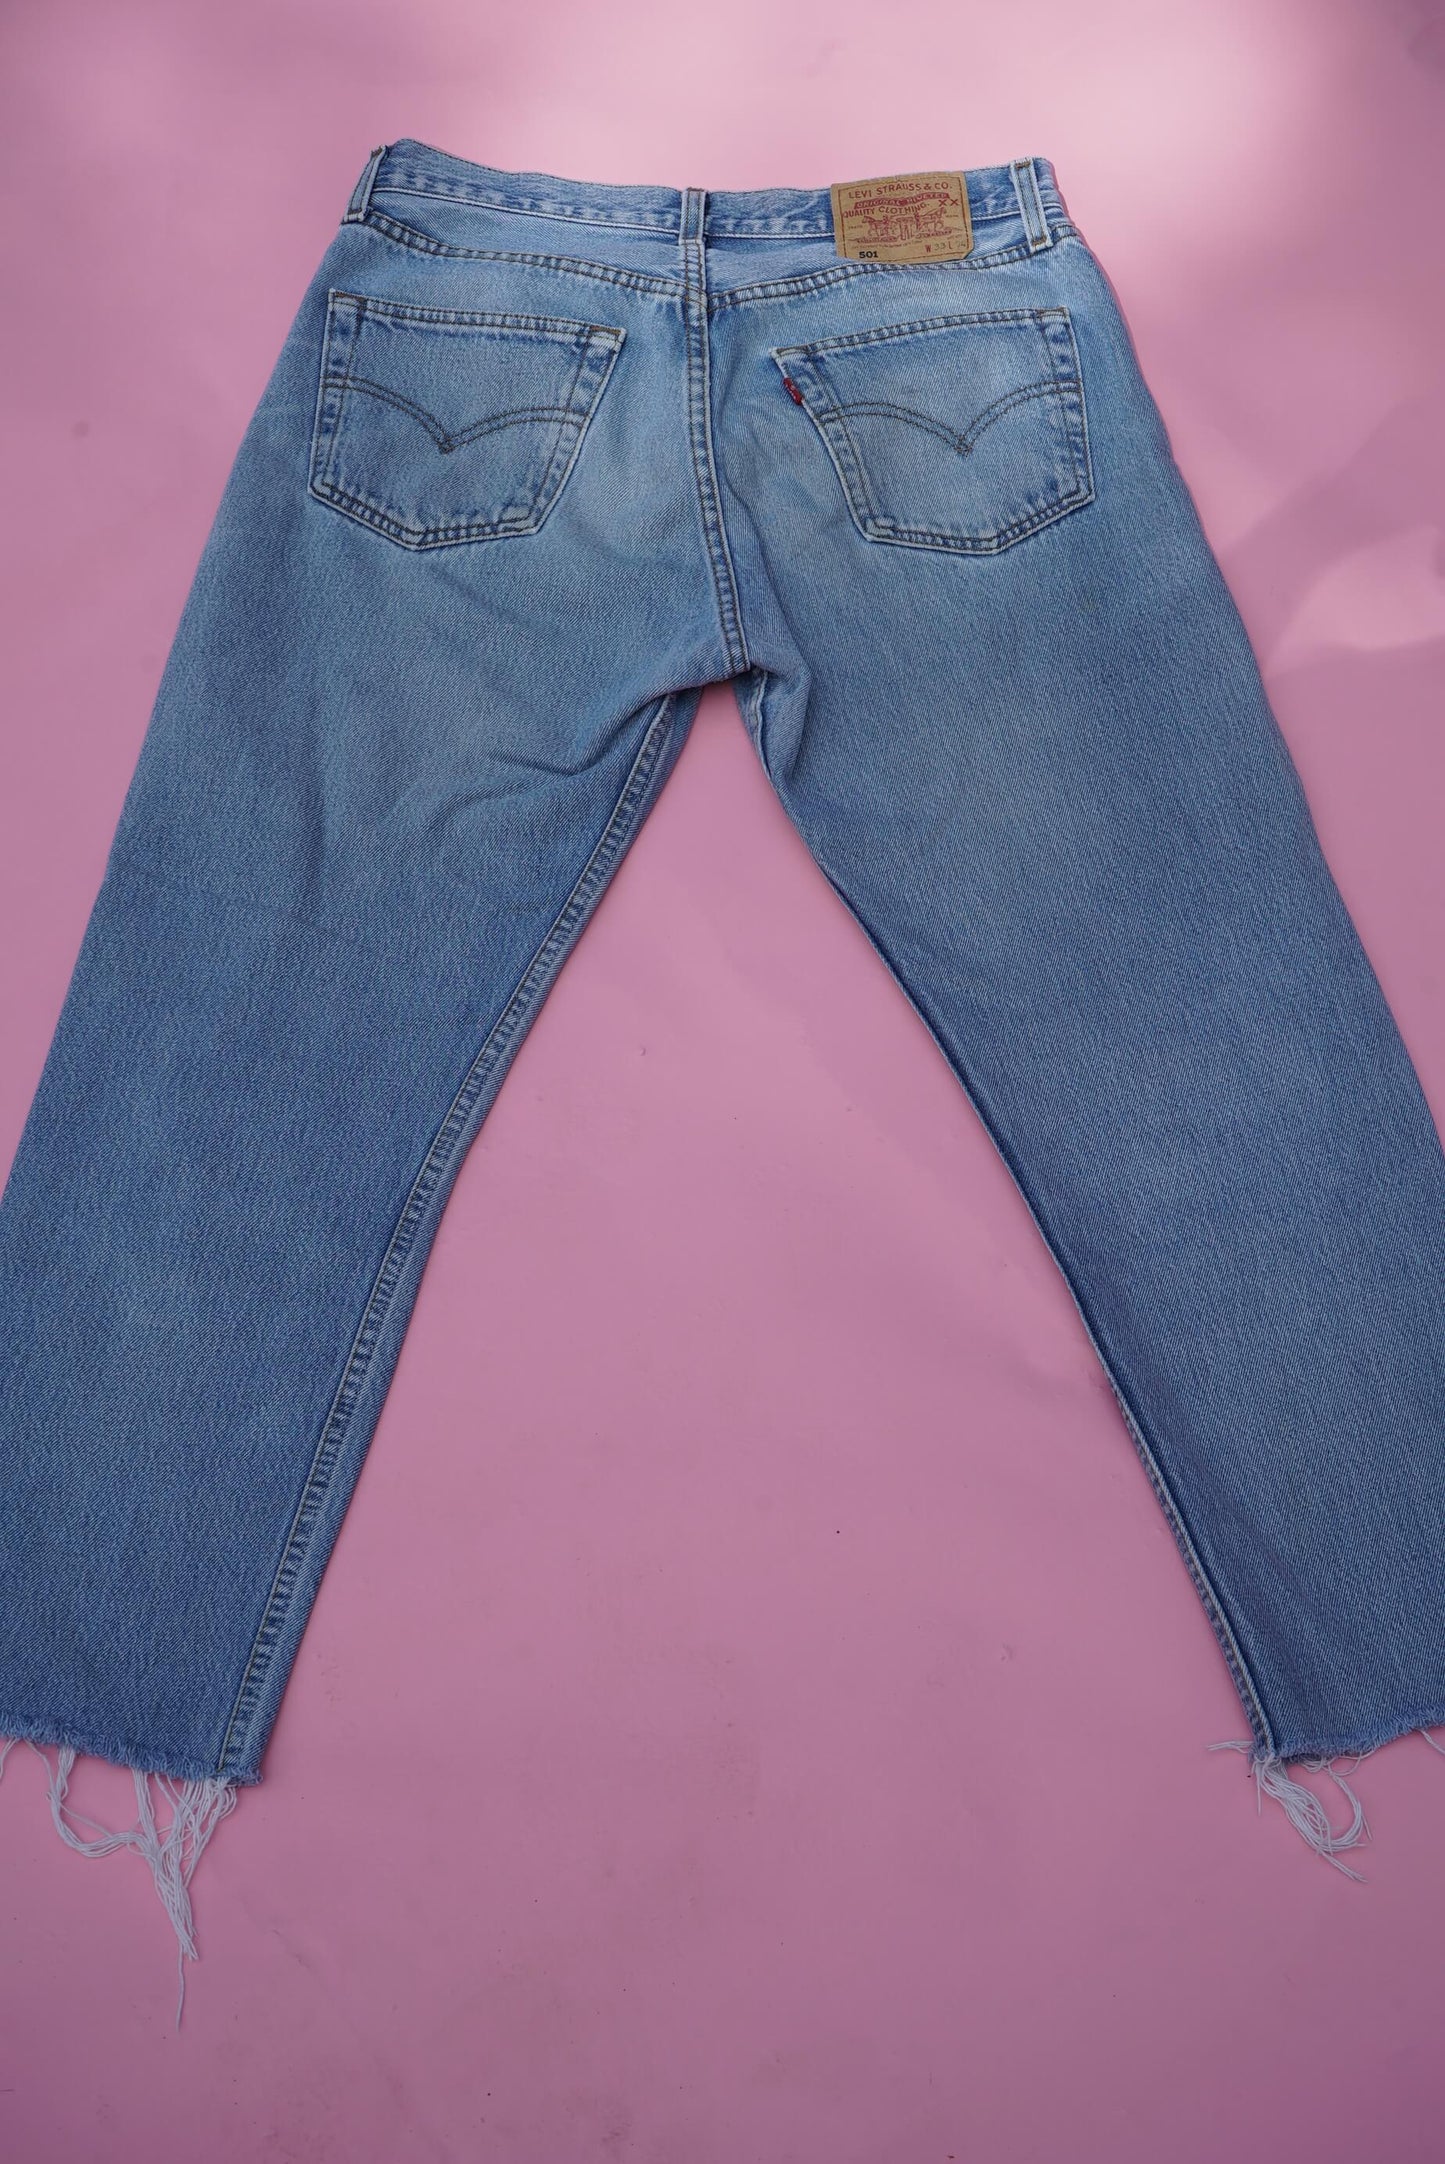 Vintage 90s Levi's 501 Jeans W33 Ankle Length Light Blue